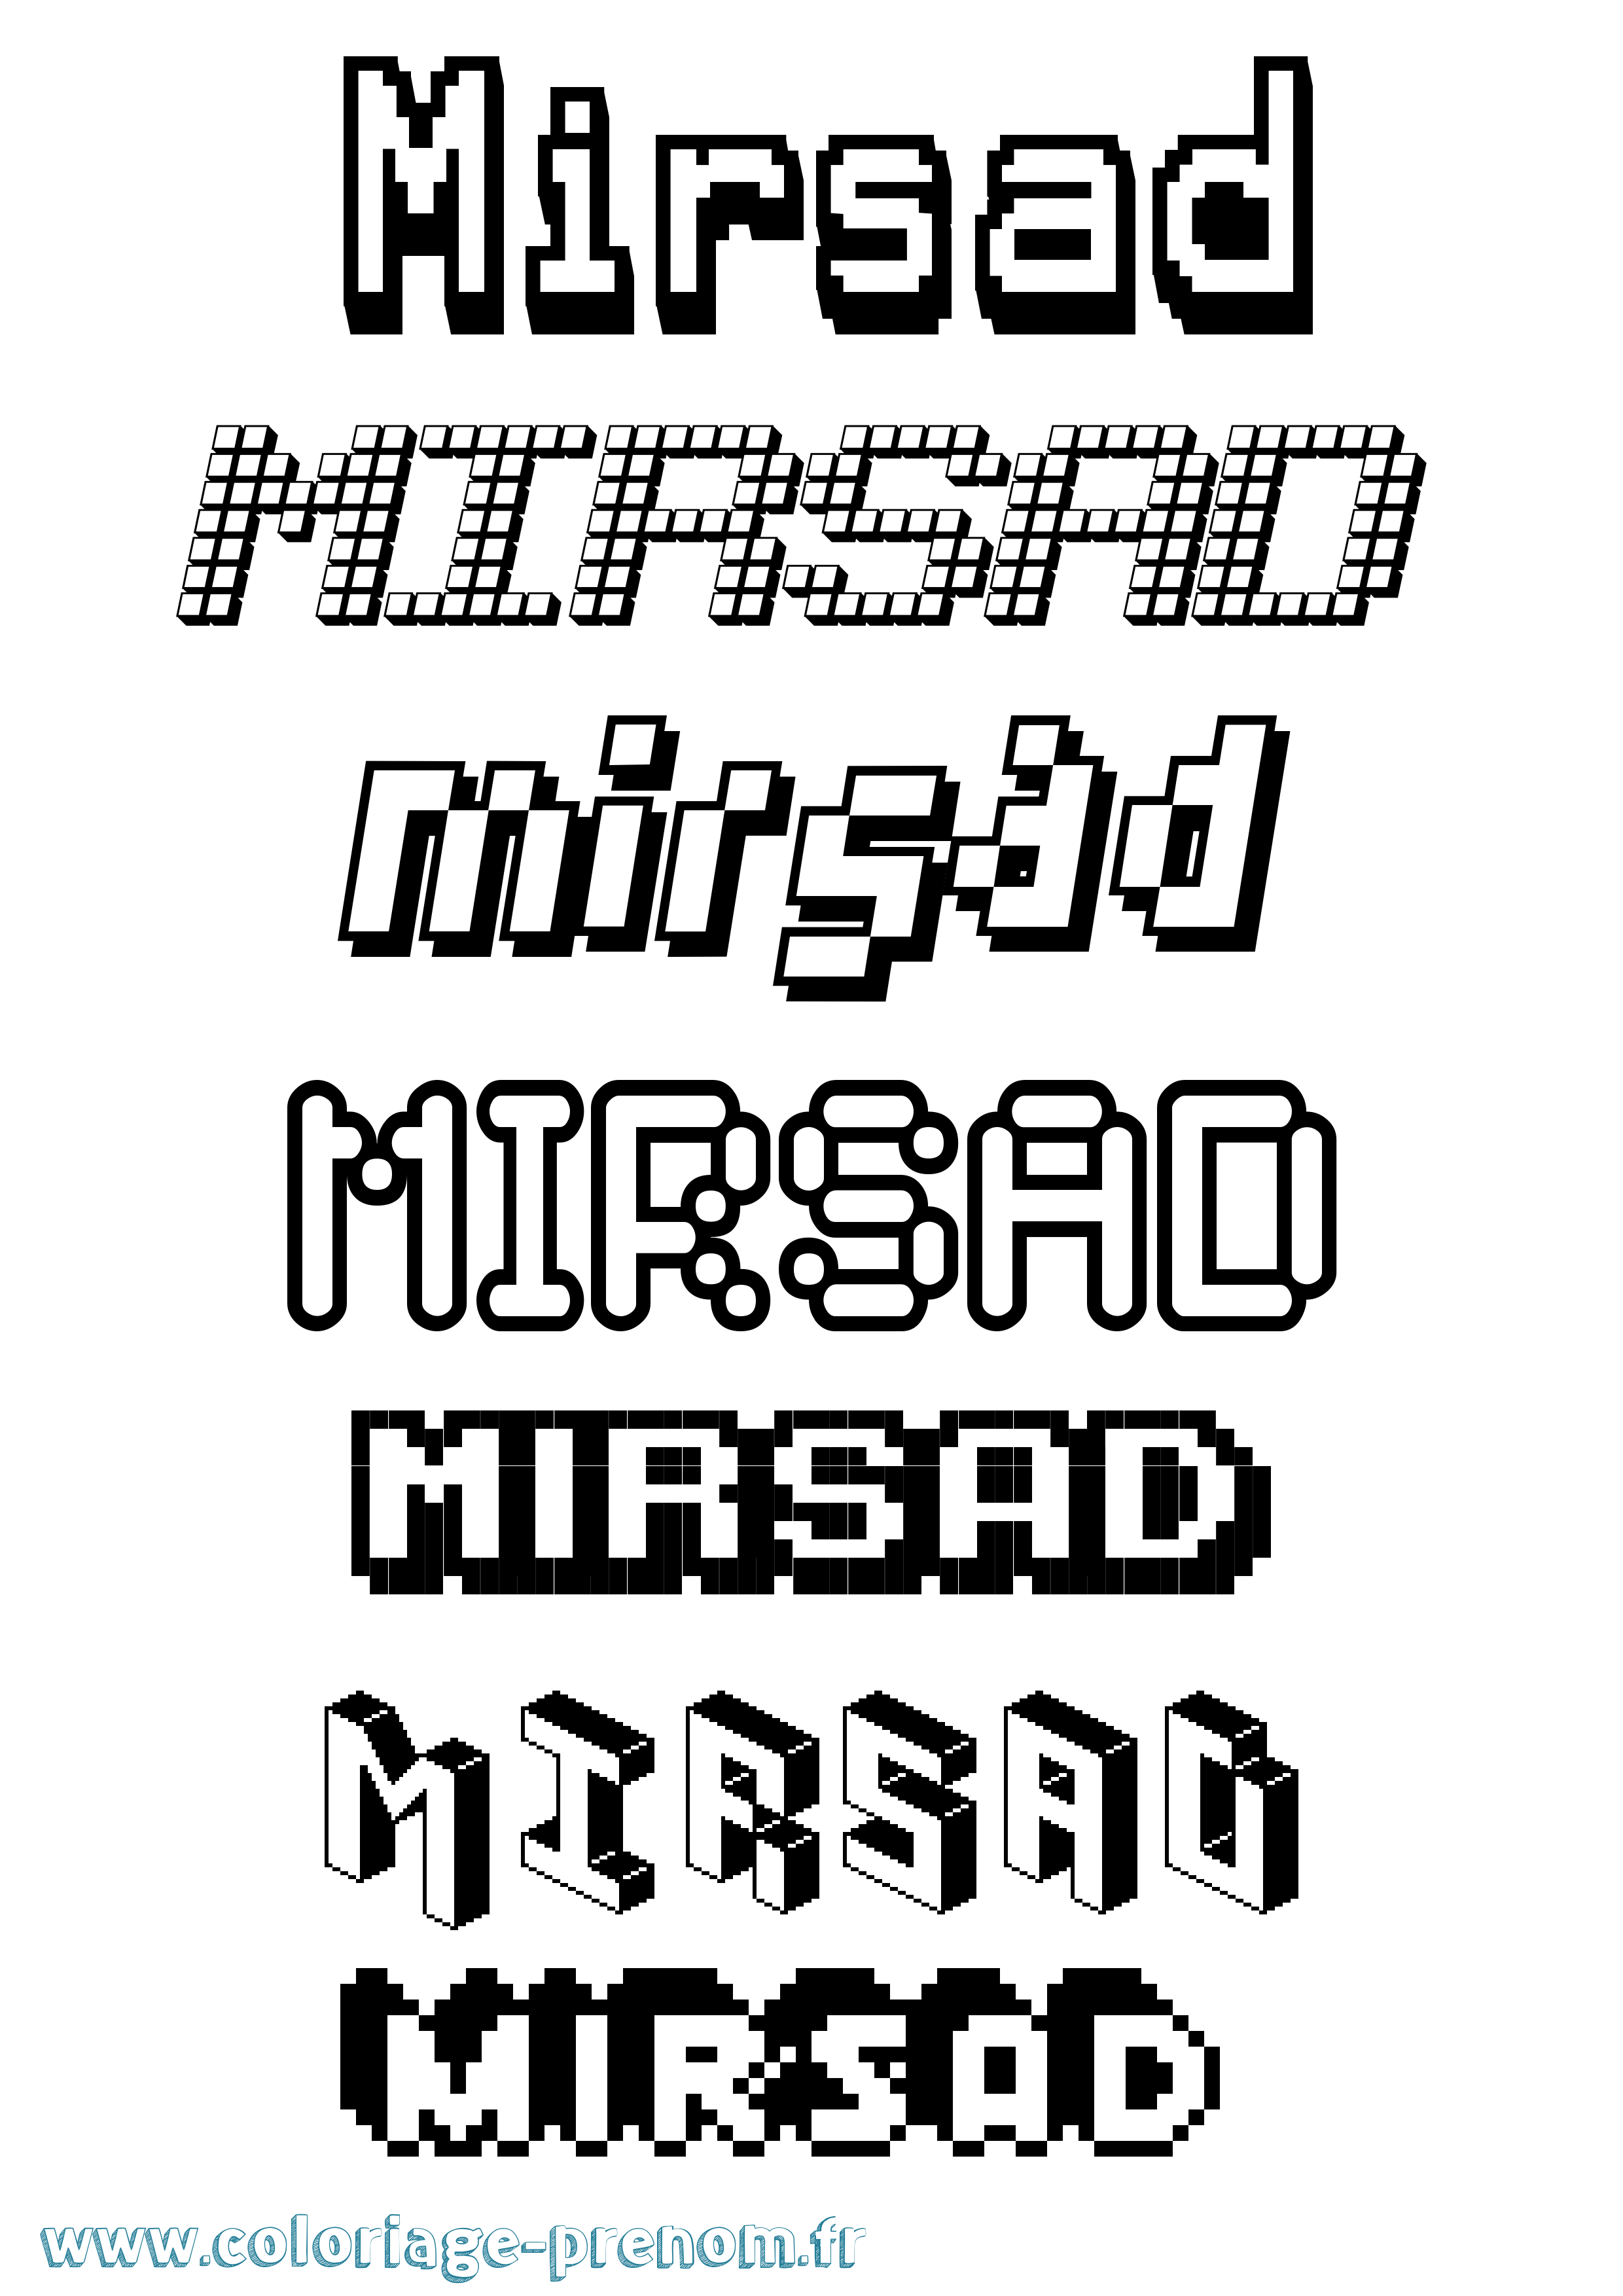 Coloriage prénom Mirsad Pixel